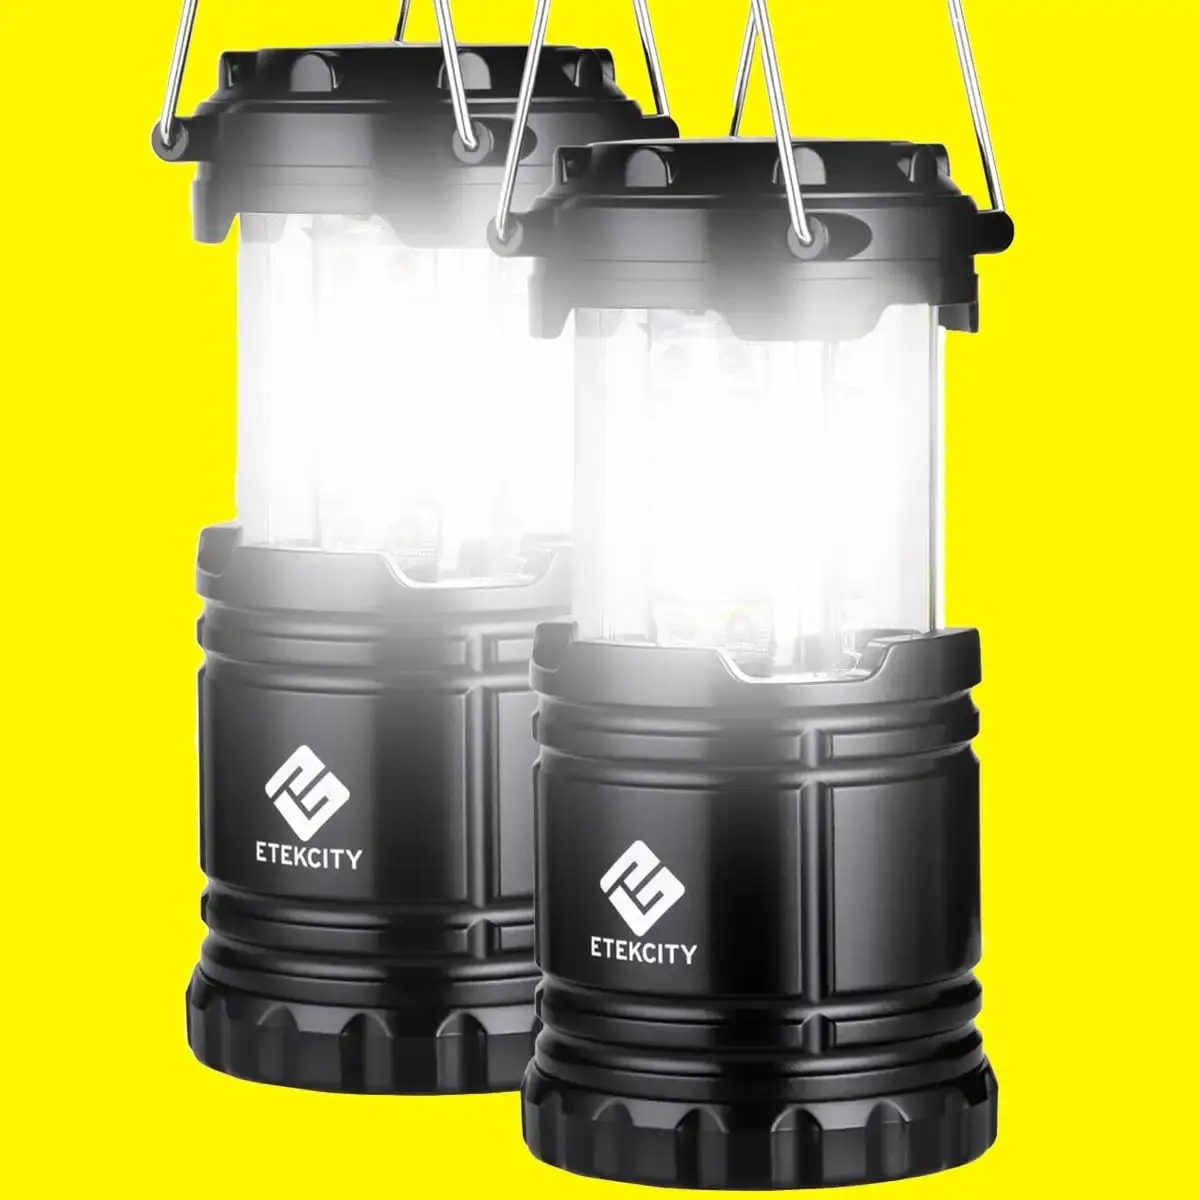 Etekcity LED Camping Lantern